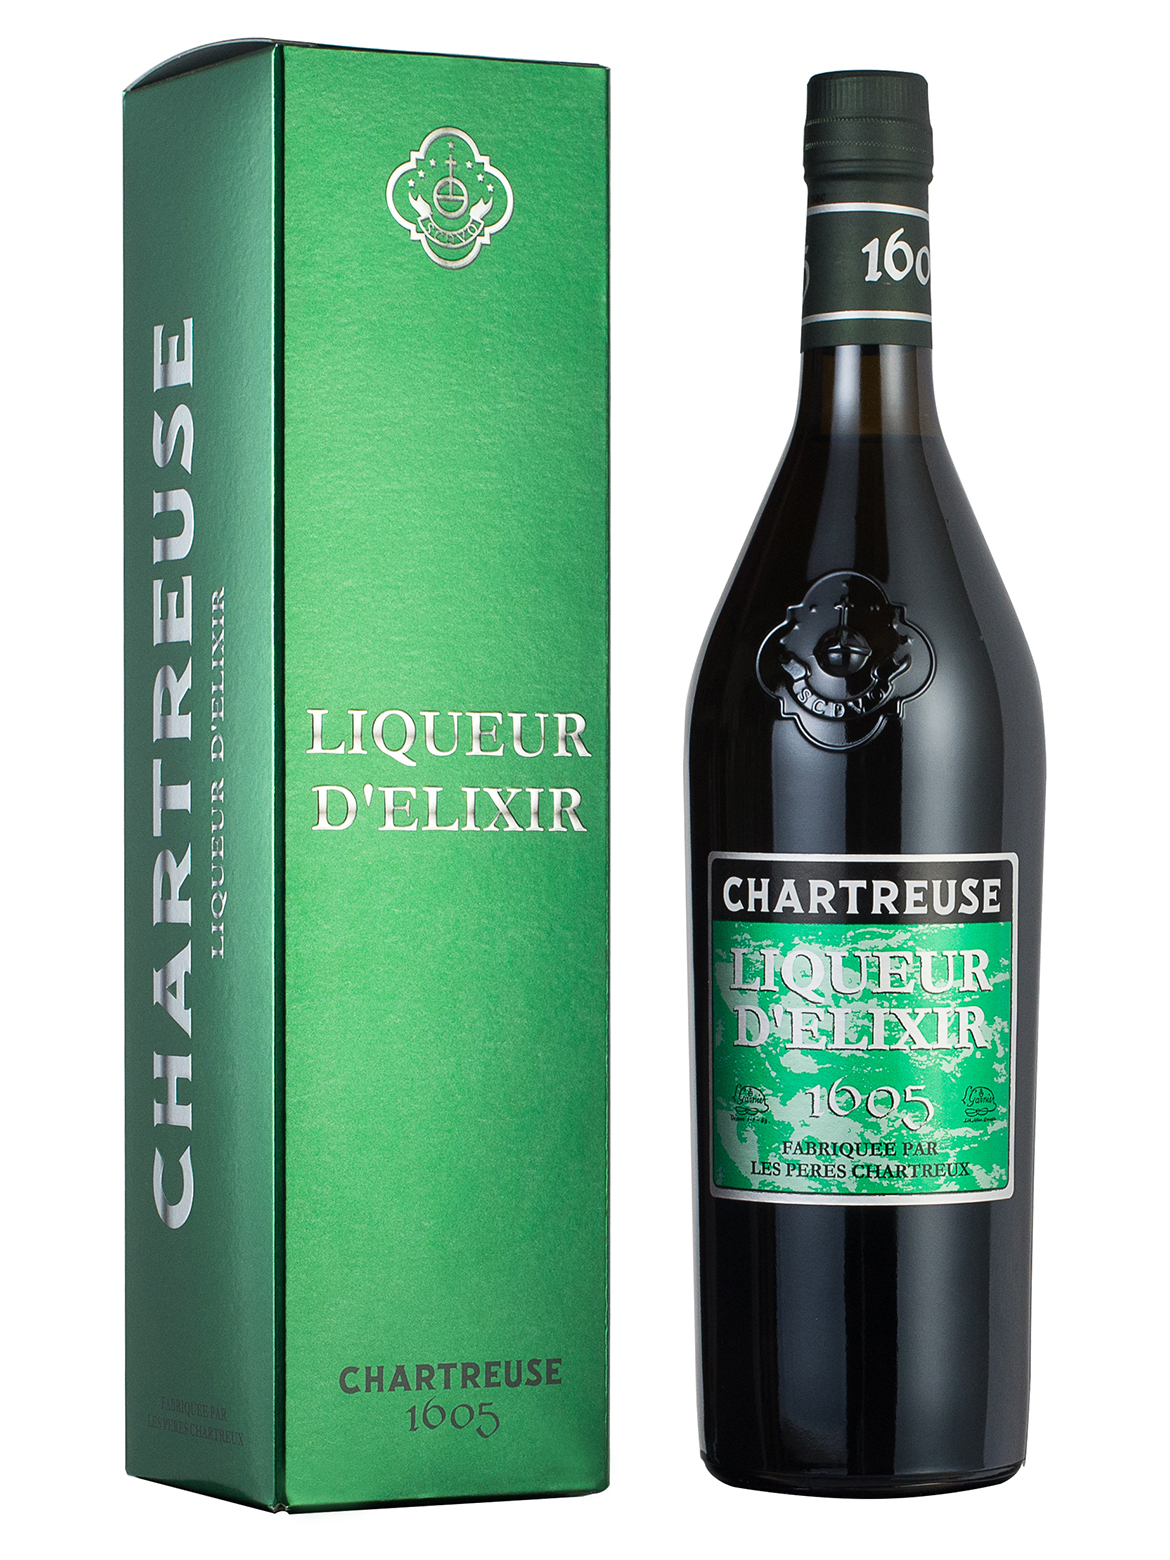 CHARTREUSE - 1605 Liqueur D’Elixir